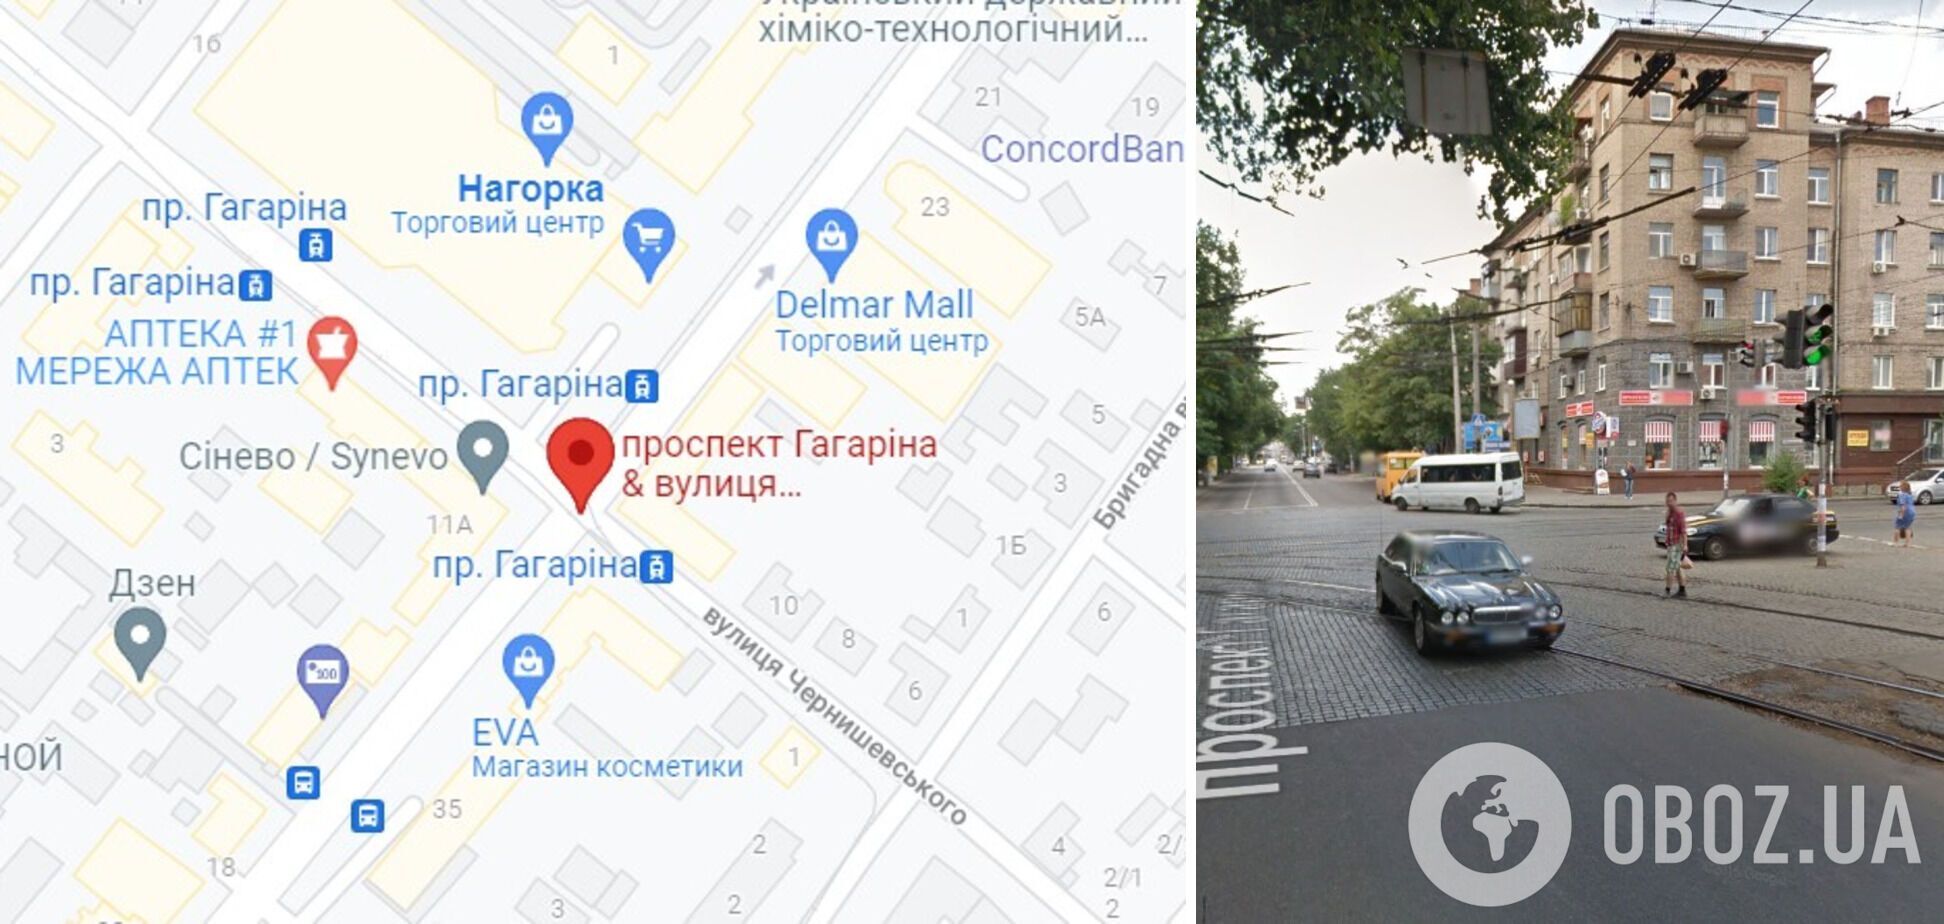 Аварія трапилася на перехресті проспекту Гагаріна й вулиці Чернишевського